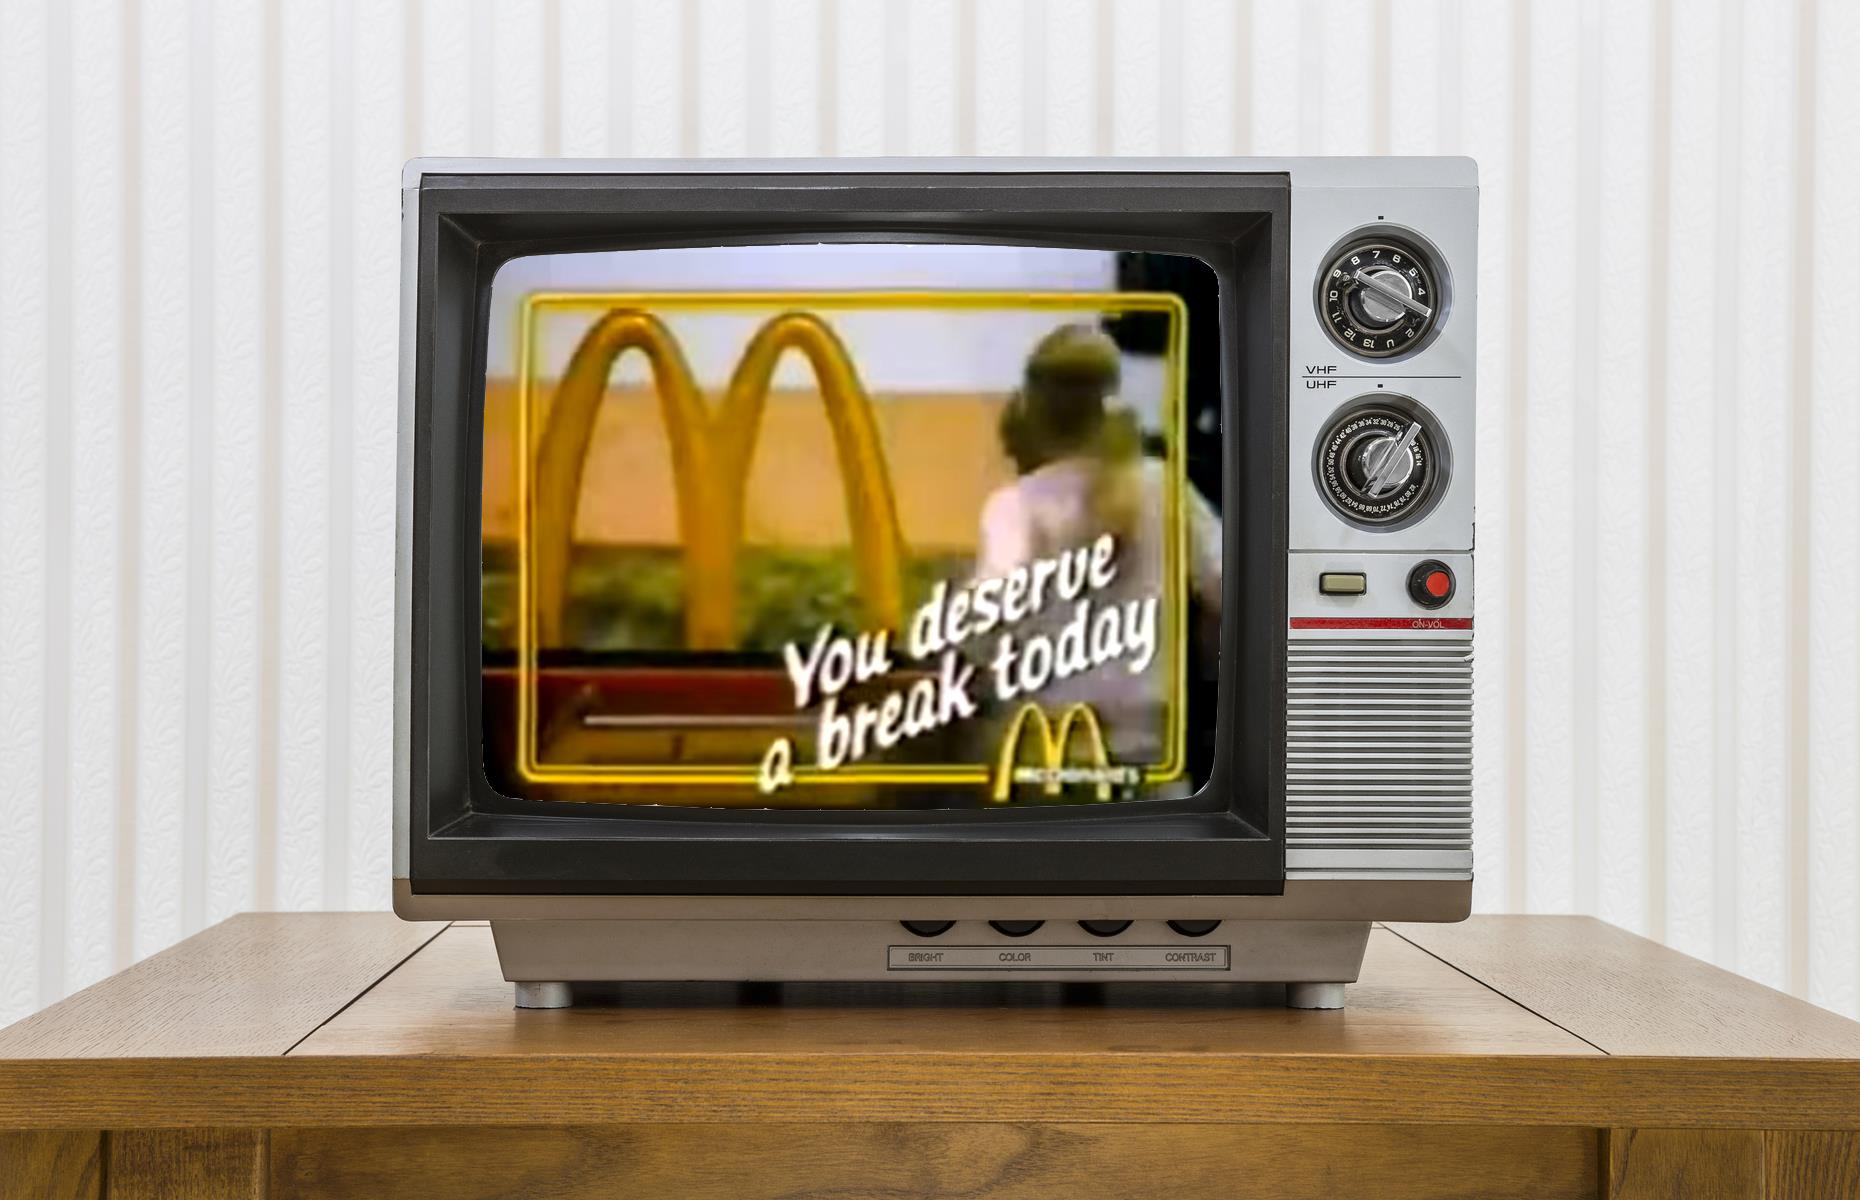 1982: McDonald's